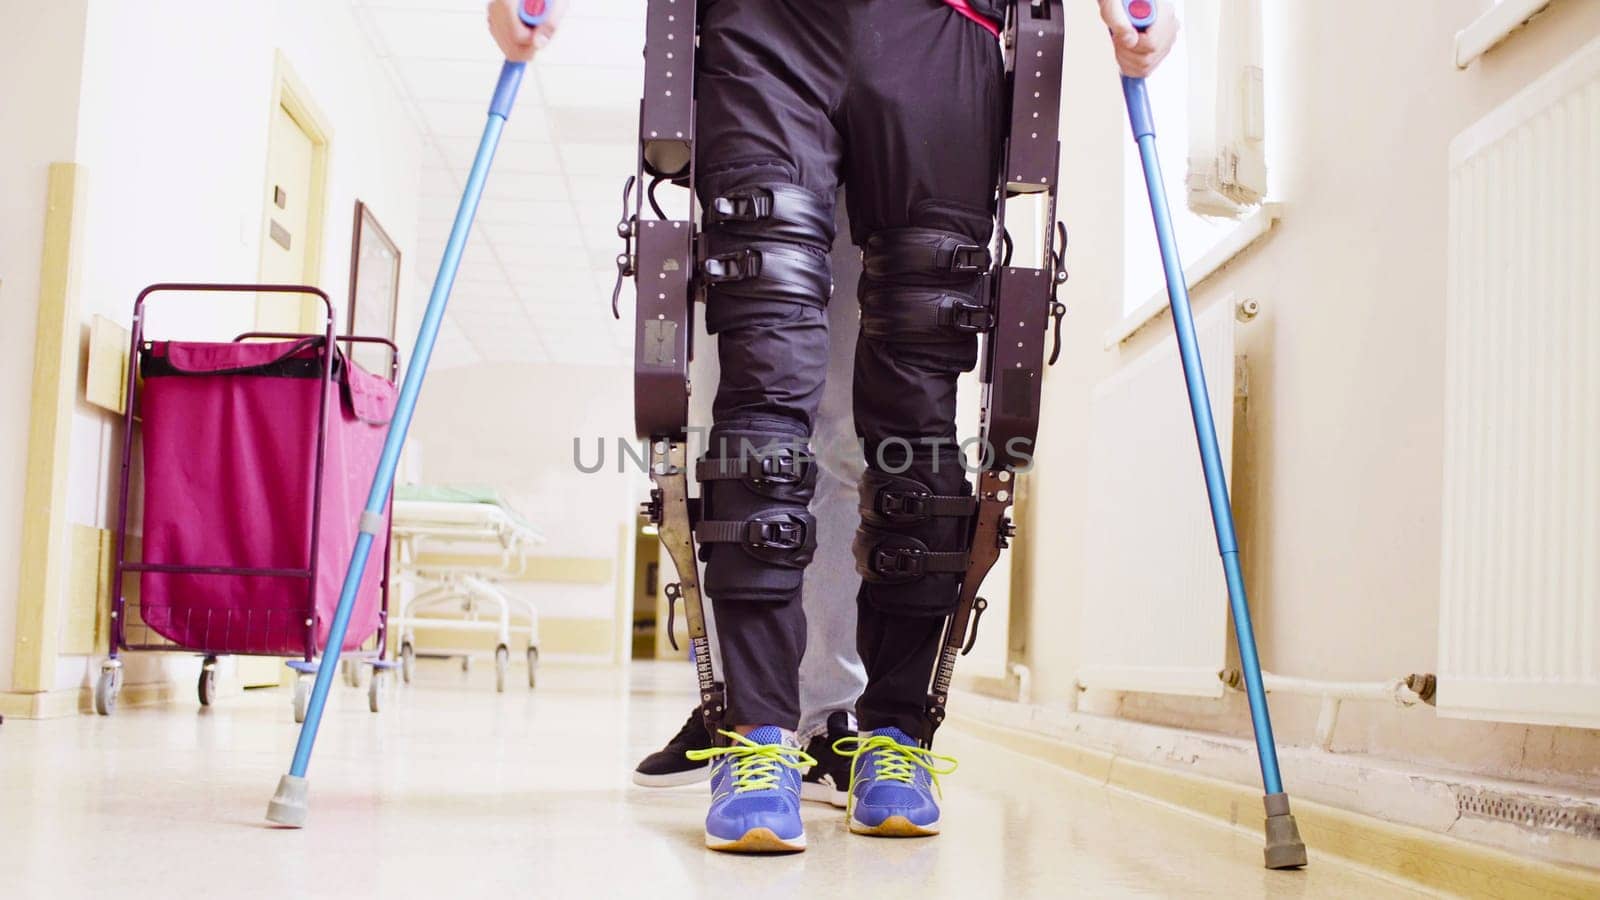 Legs of disable man in robotic exoskeleton by Chudakov